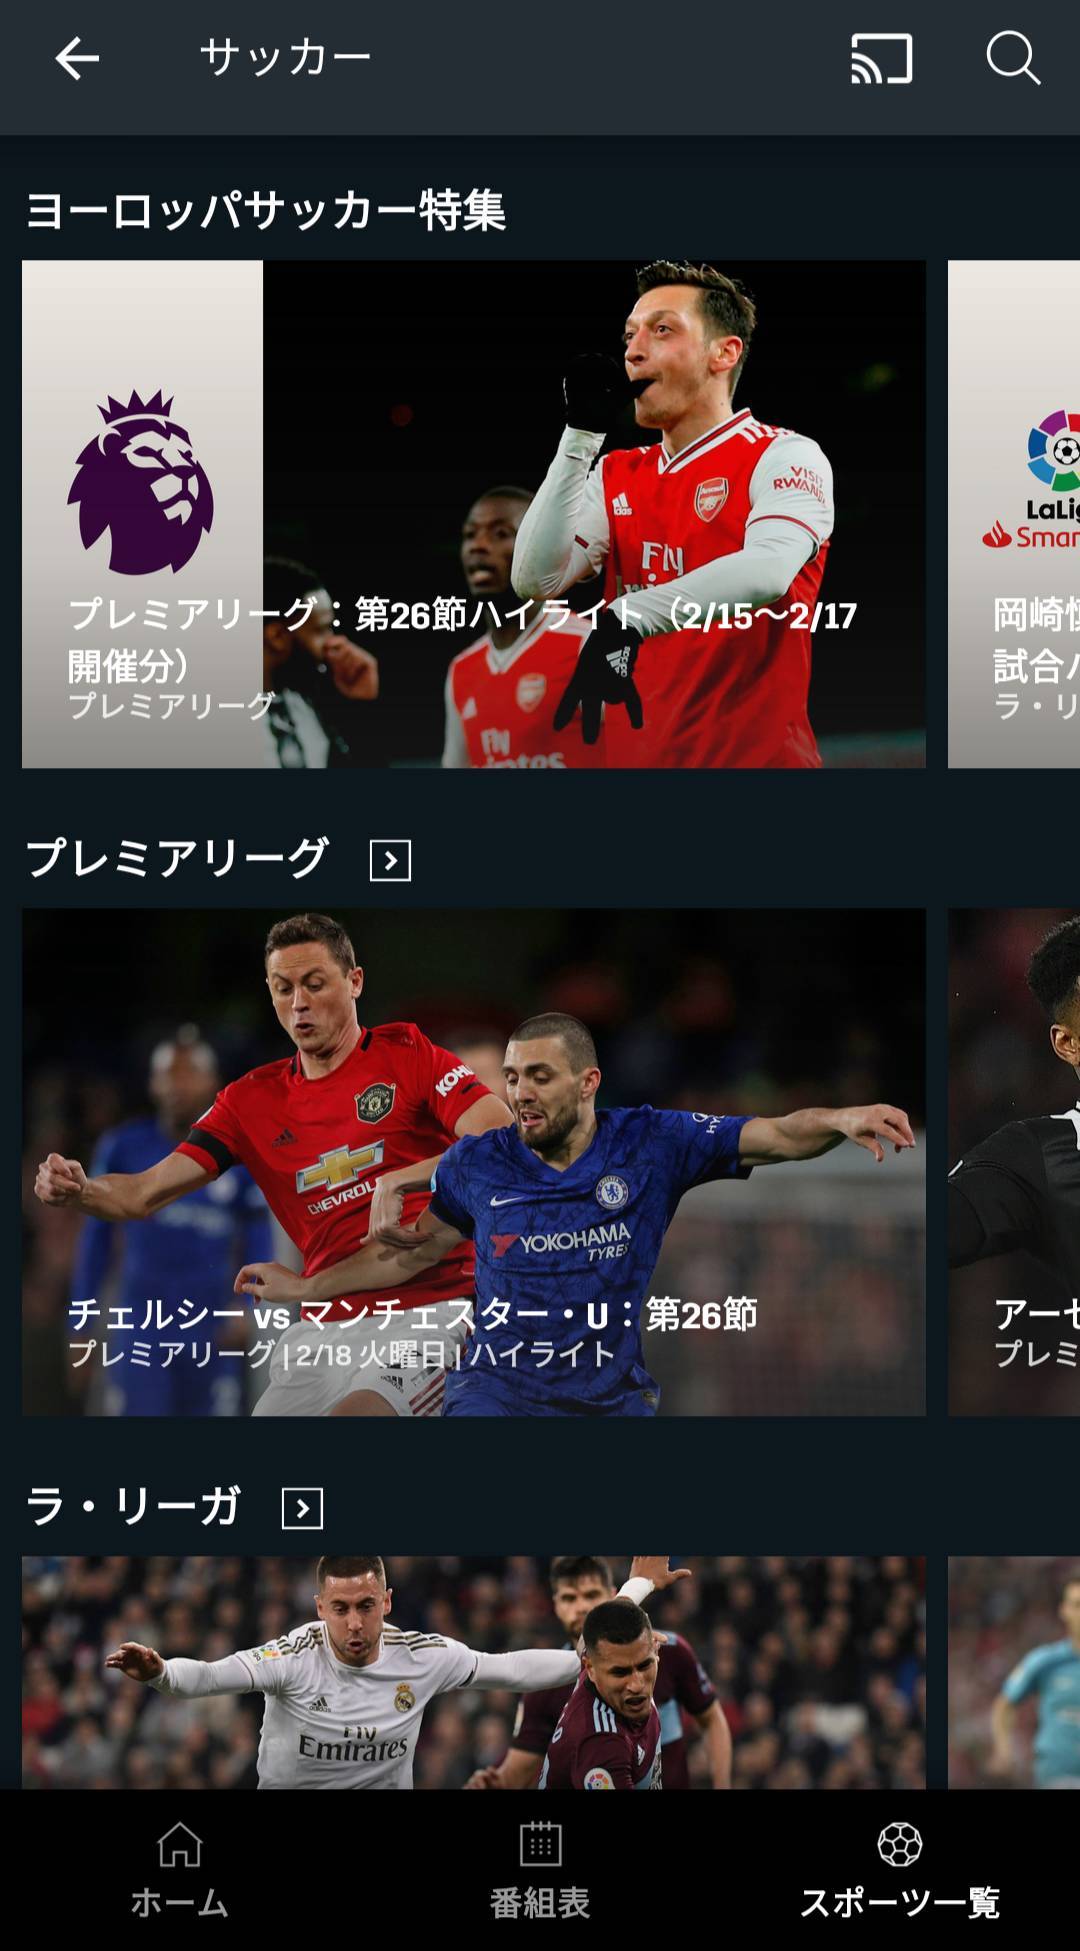 国内サッカー Jリーグのネット中継をスマホで観る方法6つ 無料あり の画像 2枚目 Appliv Topics